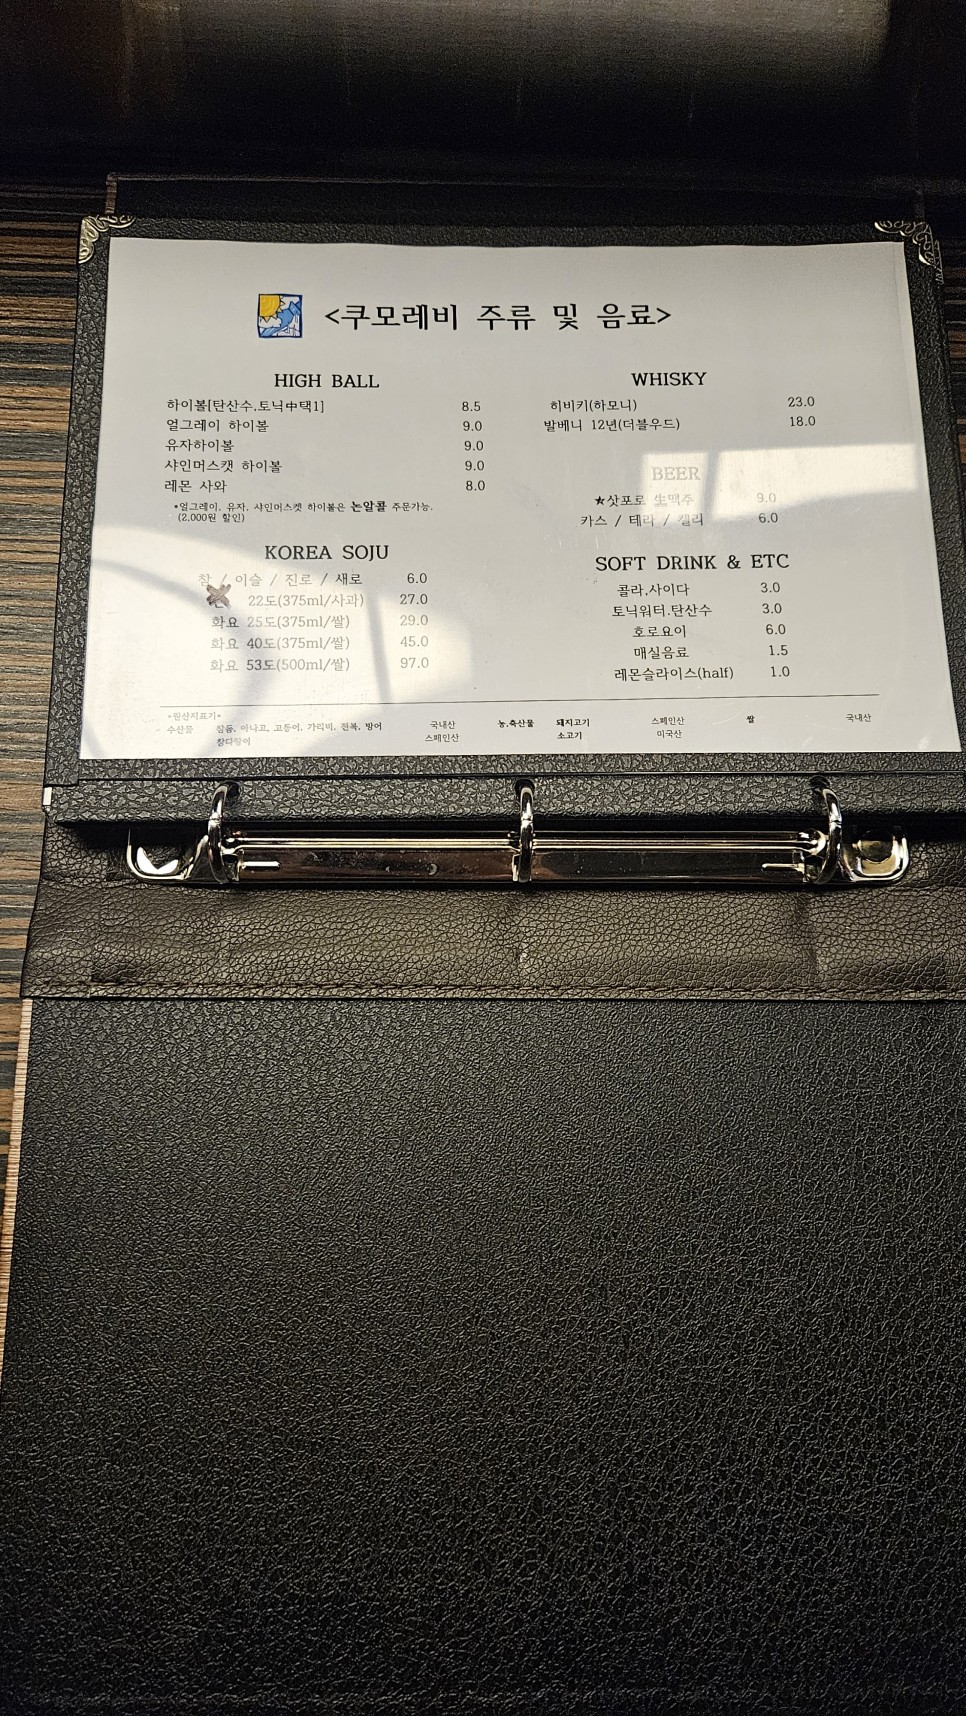 황금동 이자카야, 쿠모레비 | 맛과 분위기까지!